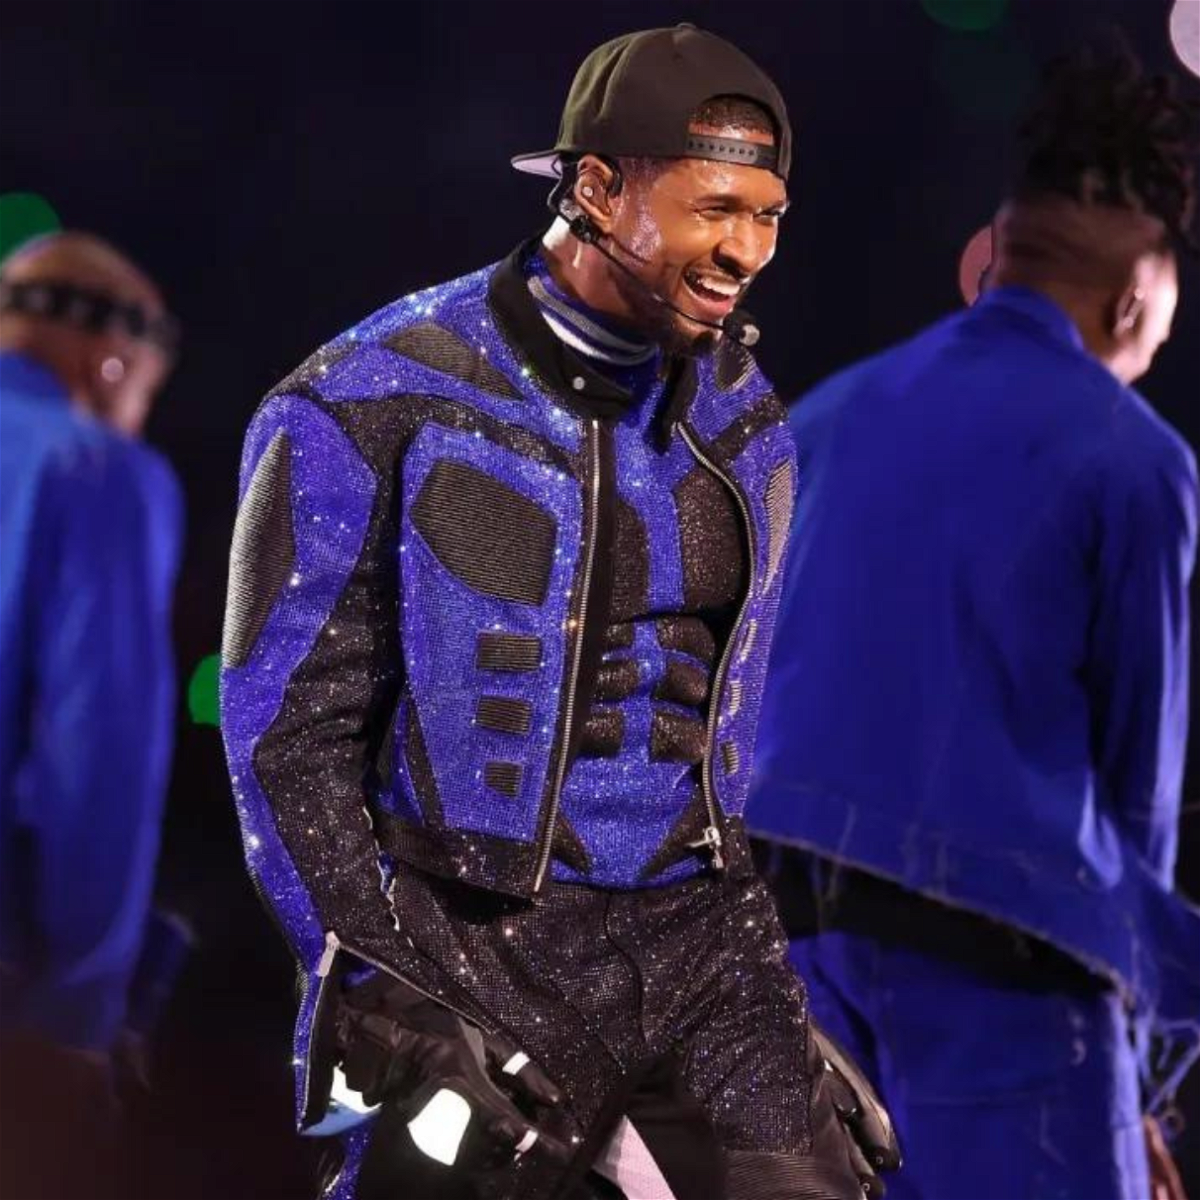 Ținutele personalizate Off-White și Dolce & Gabbana ale lui Usher fură privirile la spectacolul din pauză